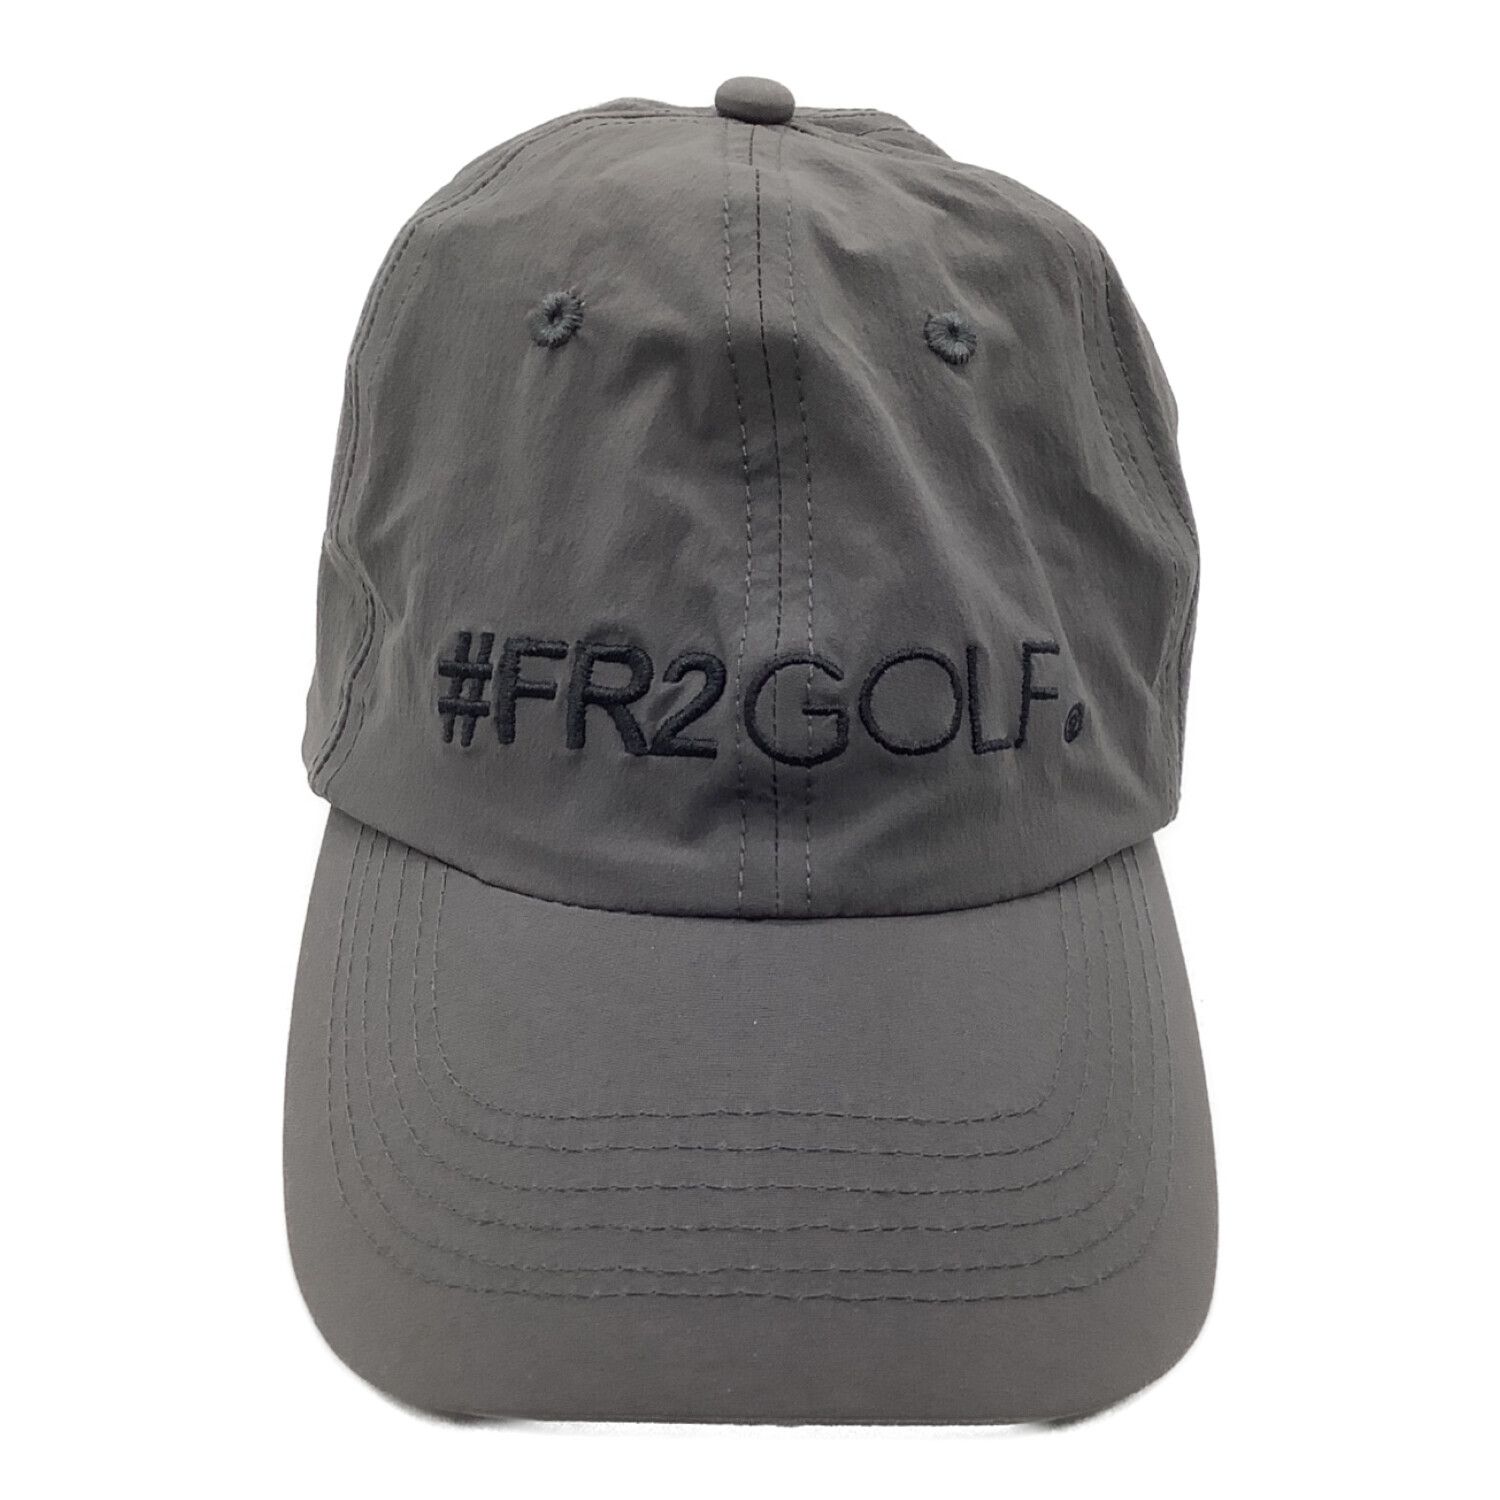 FR2 GOLF (エフアールツー ゴルフ) キャップ グレー 入手困難品 